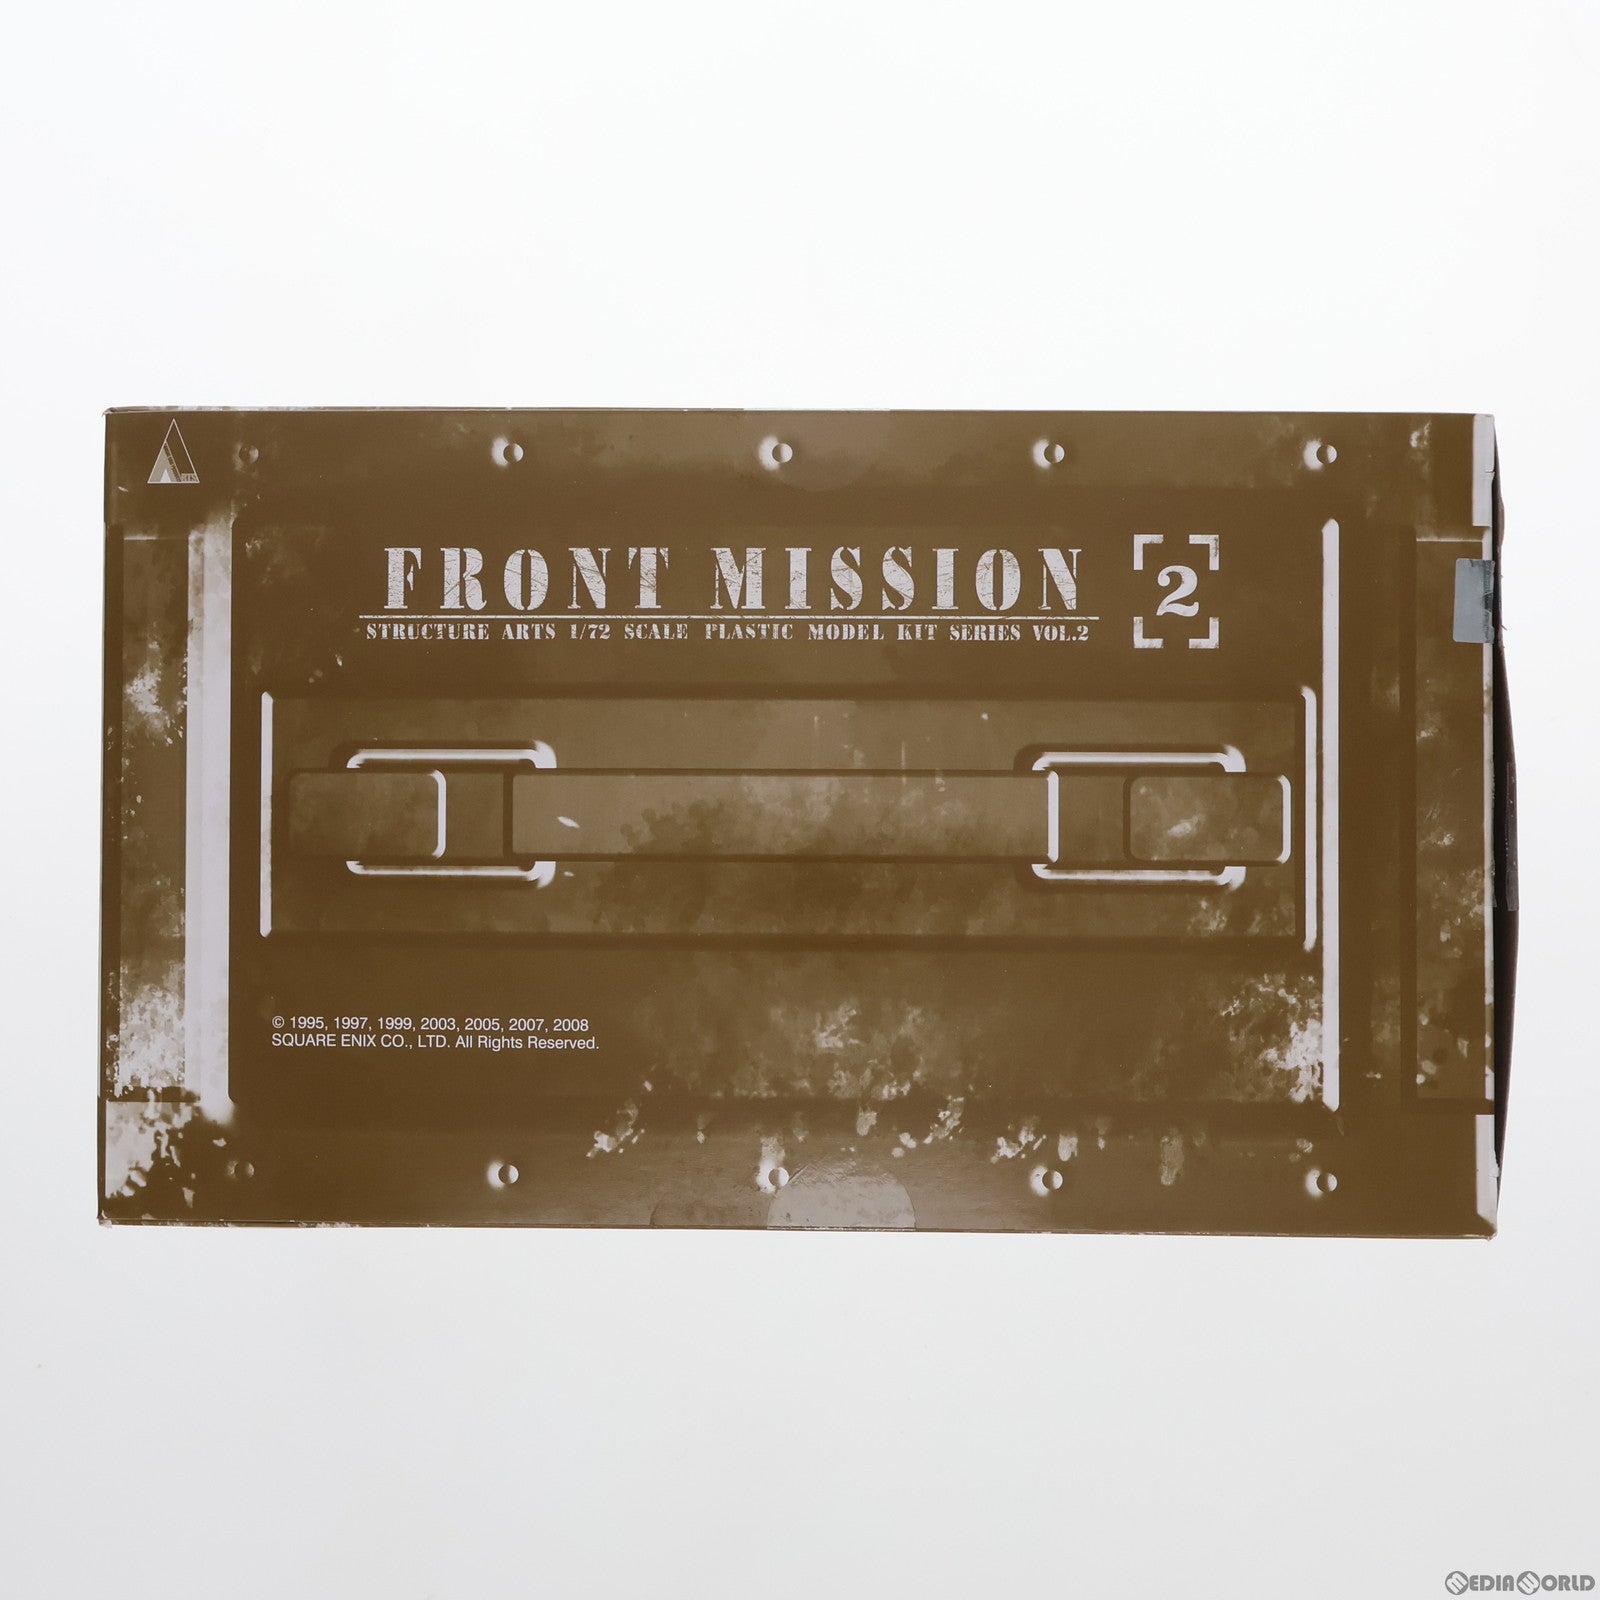 【中古即納】[PTM]フロントミッション ストラクチャーアーツ 1/72 スケール プラスティック モデルキット シリーズ Vol.2 全4種BOX FRONT MISSION プラモデル スクウェア・エニックス(20211231)